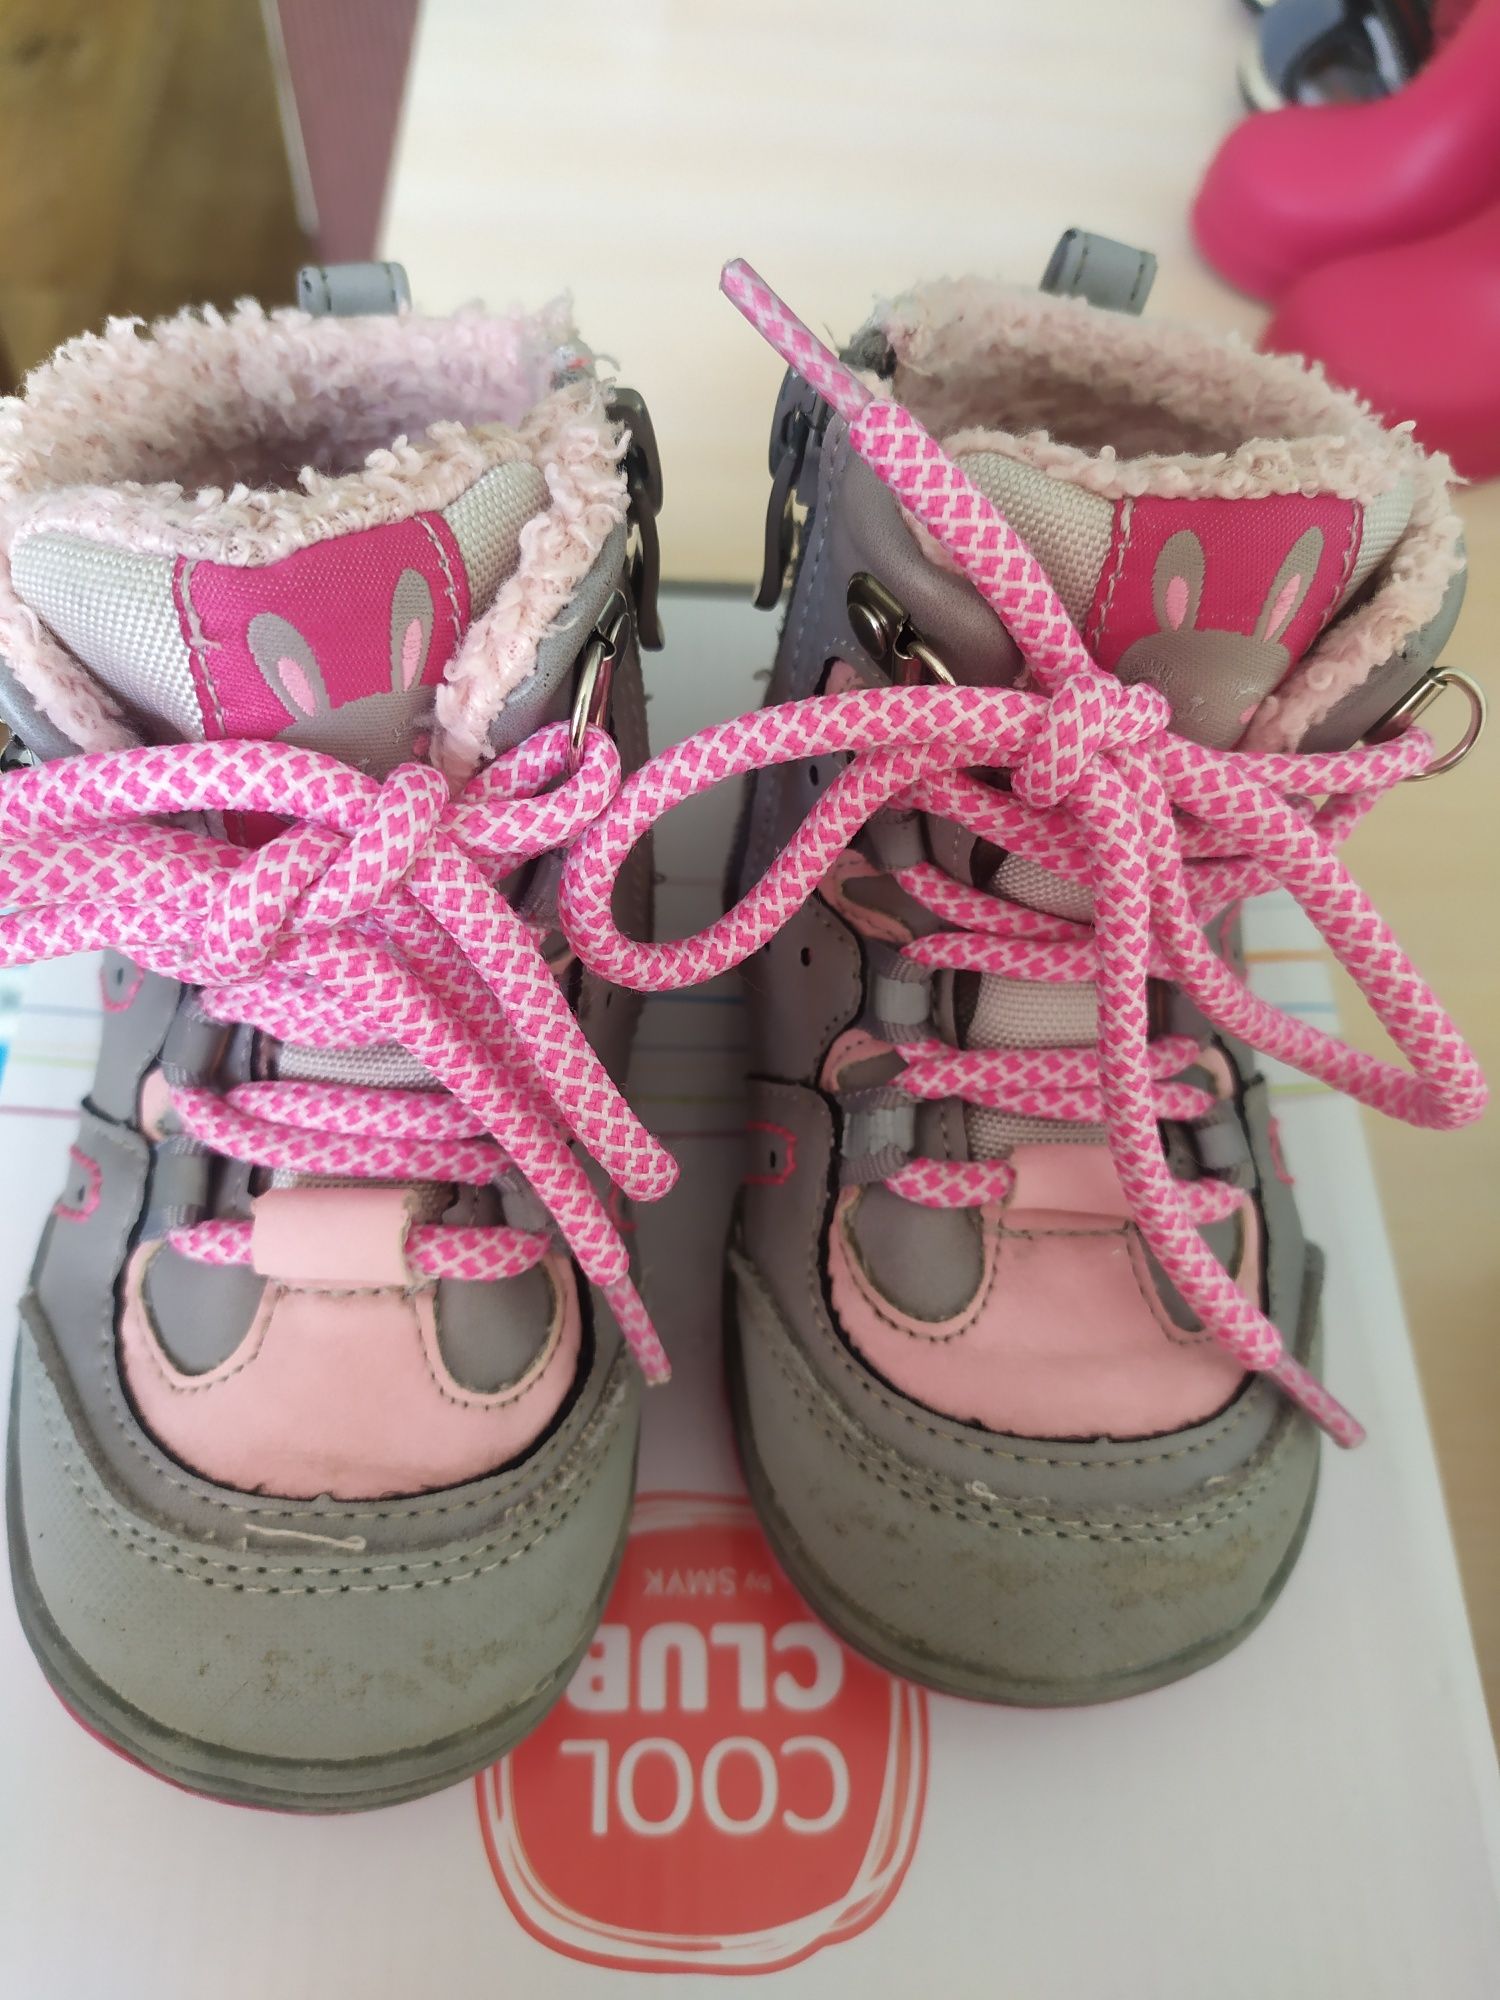 Демисезонные ботинки Cool club с розовыми шнурками.
22 размер.